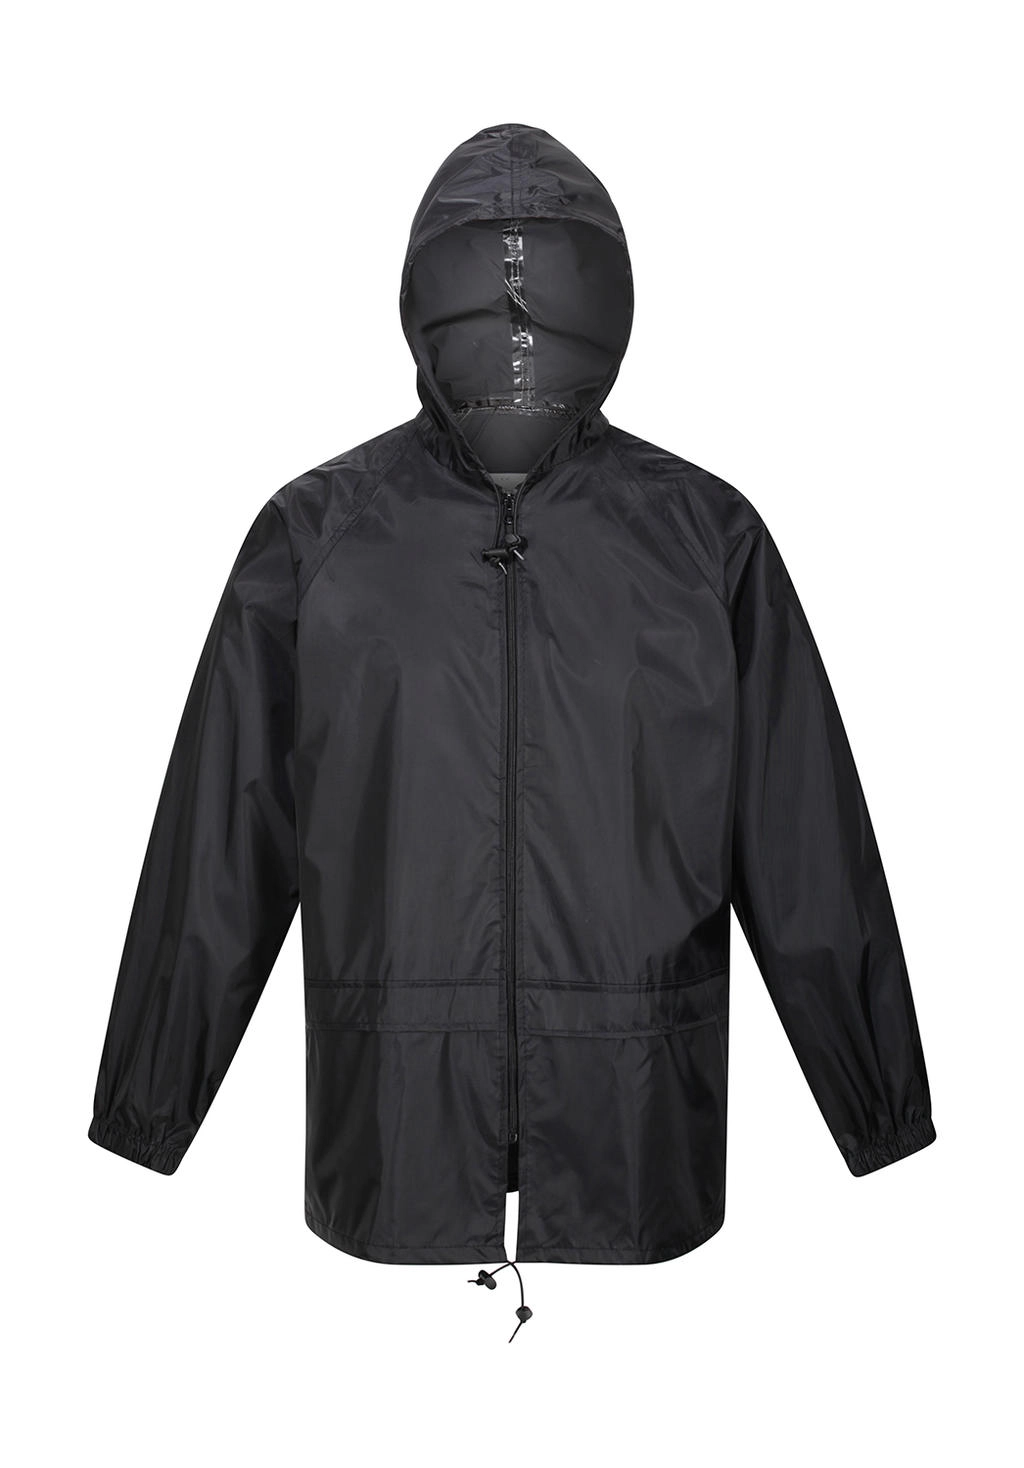 Stormbreak Jacket zum Besticken und Bedrucken in der Farbe Black mit Ihren Logo, Schriftzug oder Motiv.